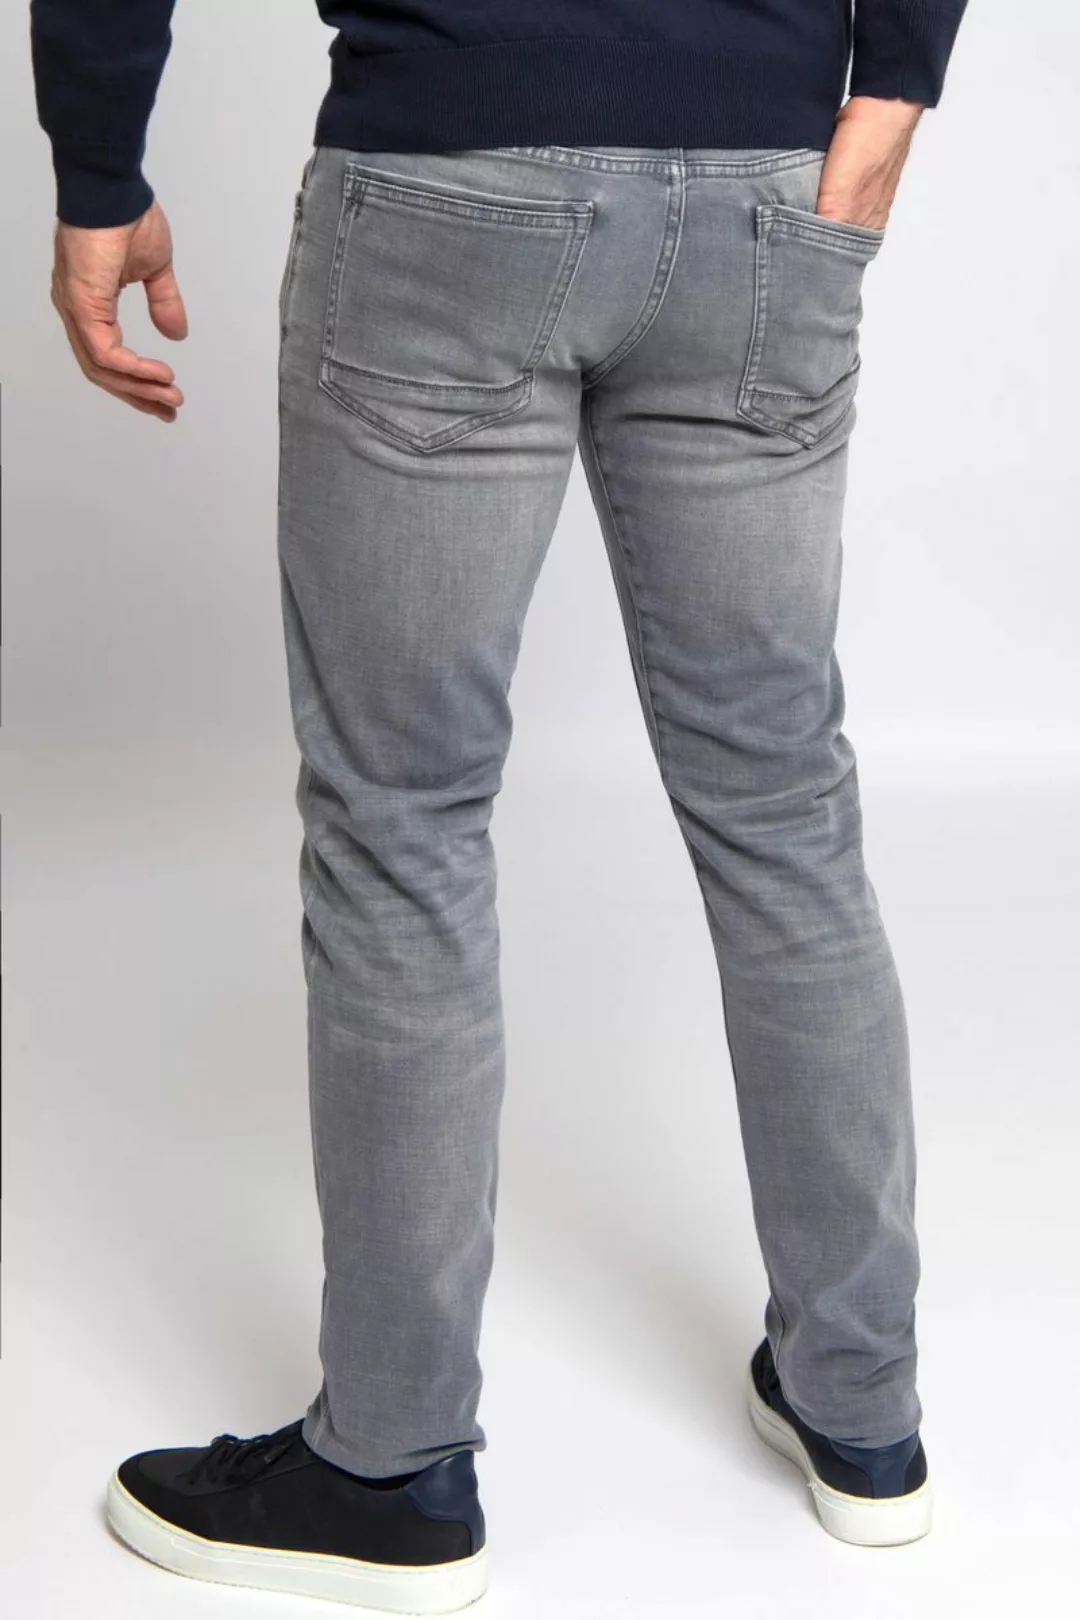 PME Legend Tailwheel Jeans LH Grau - Größe W 40 - L 34 günstig online kaufen